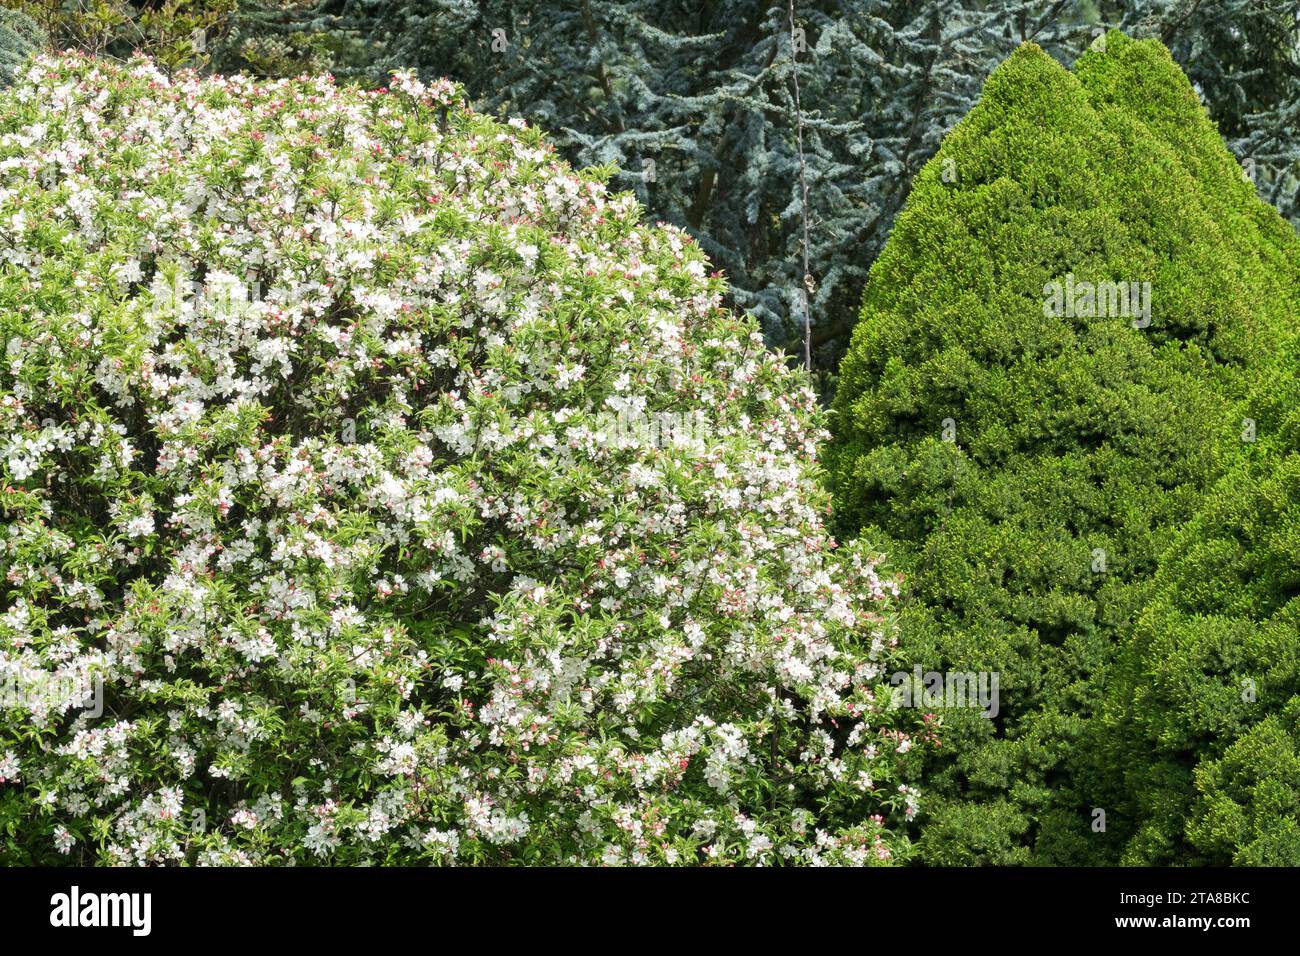 Globe shape Malus 'Pomzai' and Picea glauca 'Conica' in spring garden Stock Photo